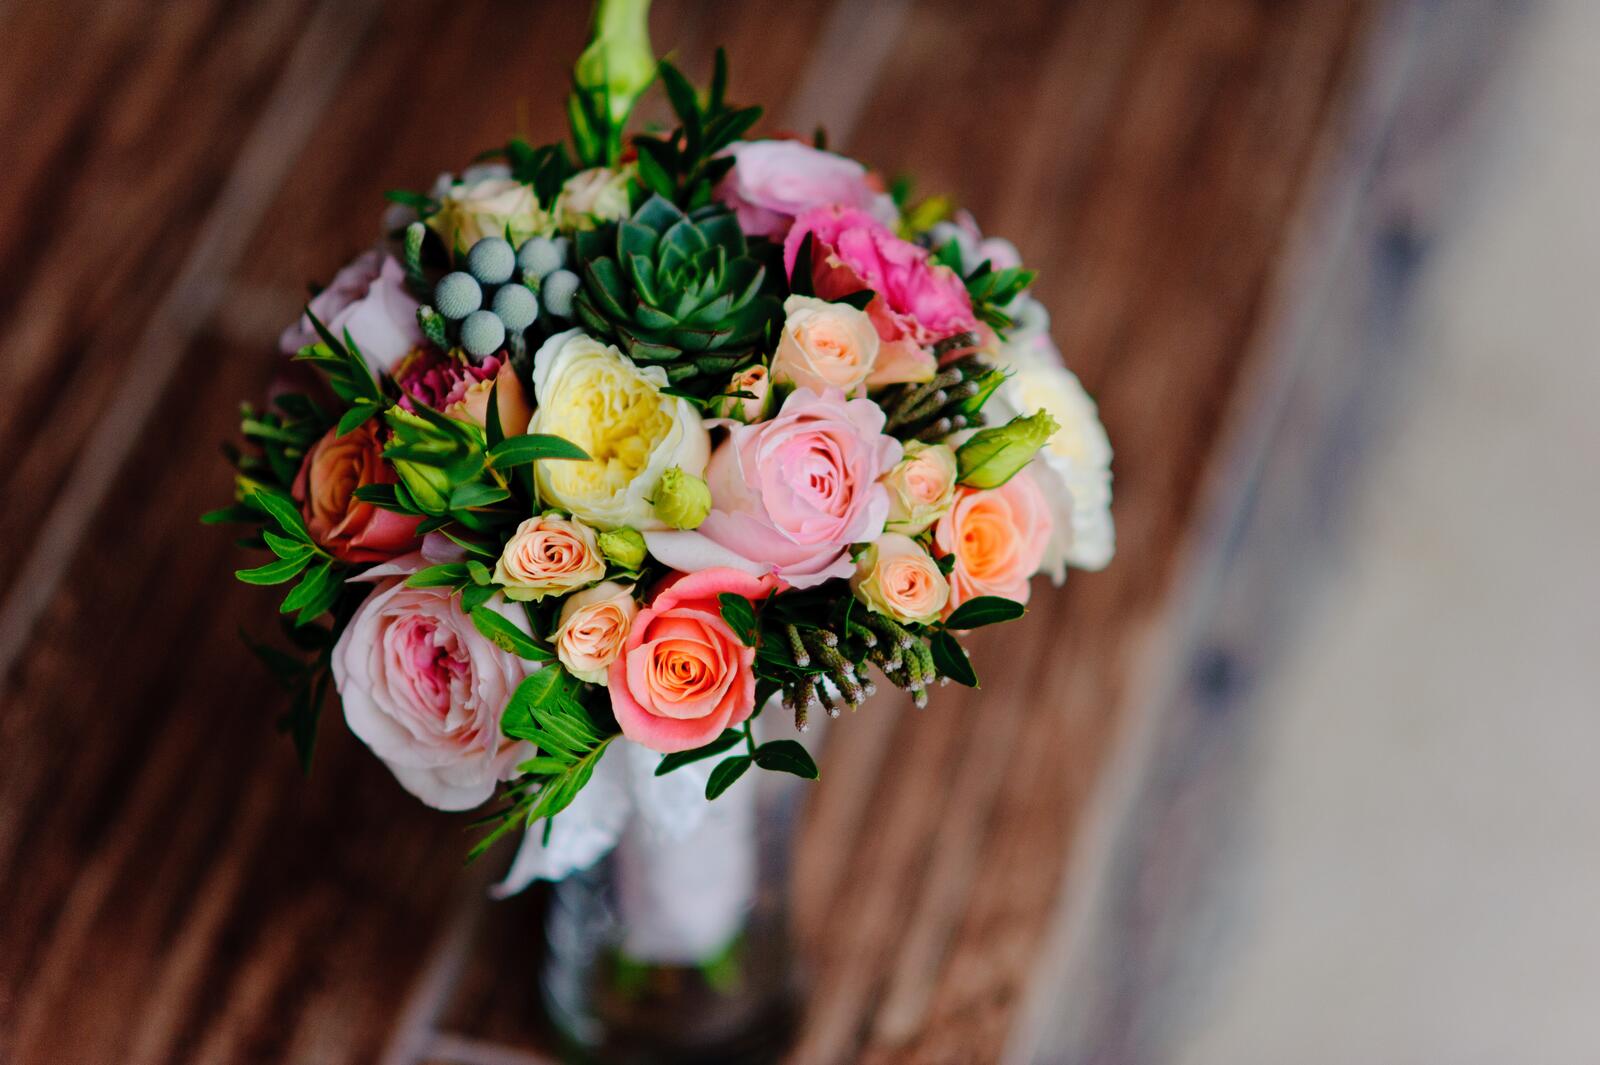 免费照片为新娘献上美丽的玫瑰花束